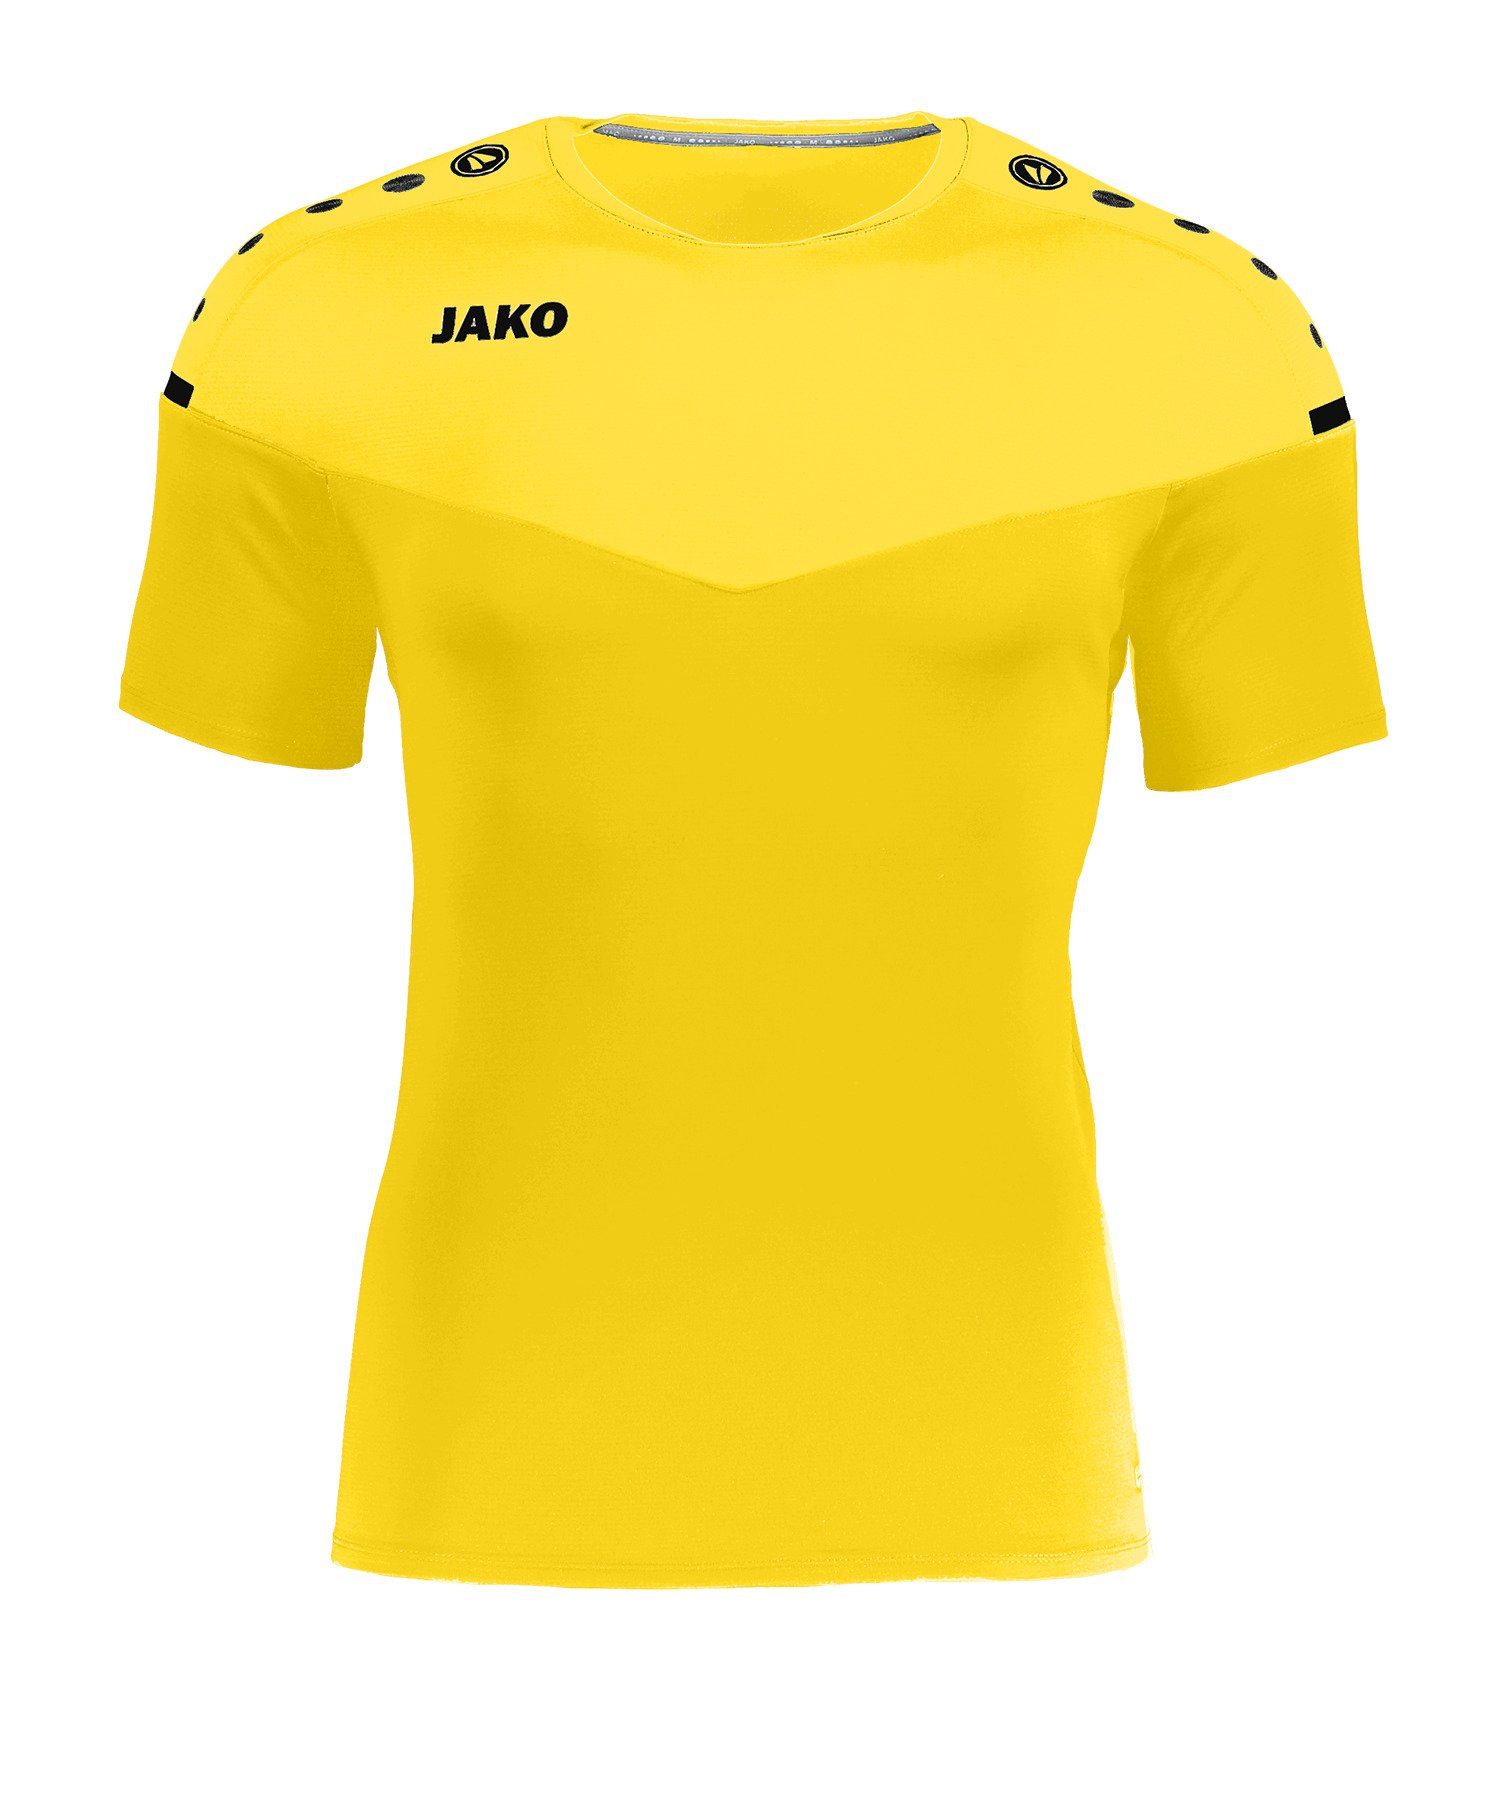 Jako default T-Shirt gelb 2.0 T-Shirt Champ